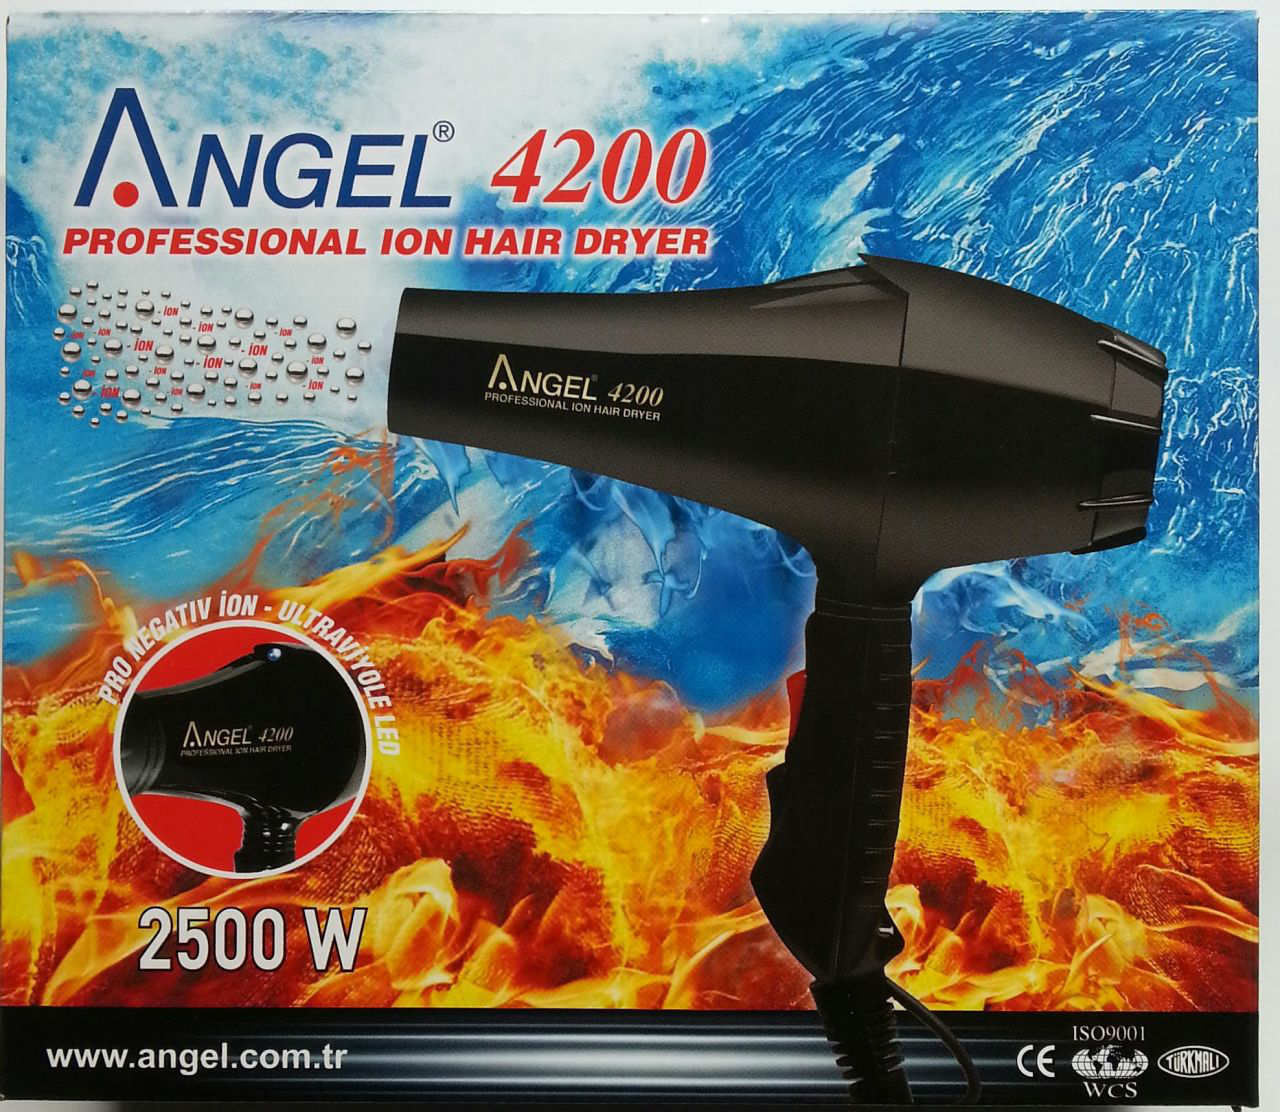 ANGEL 4200 KIRILMAZ FÖN MAKİNASI 2500 WATT () UV LED IŞ